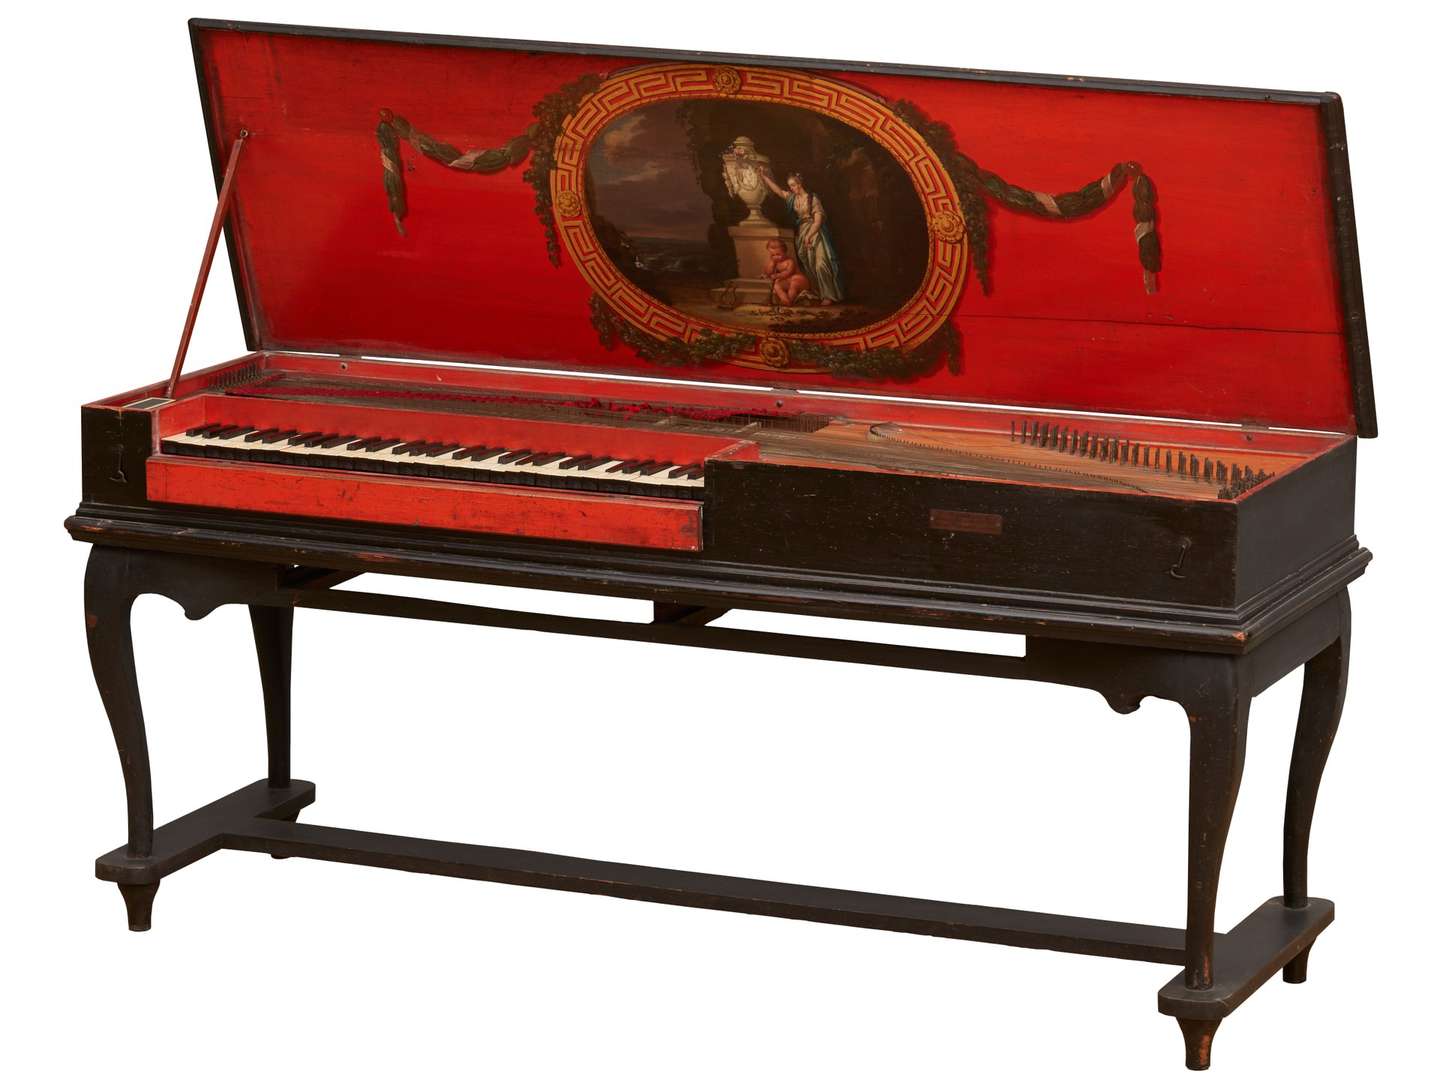 一架由 Johann Adolph Hass 生产于 1760 年的击弦古钢琴